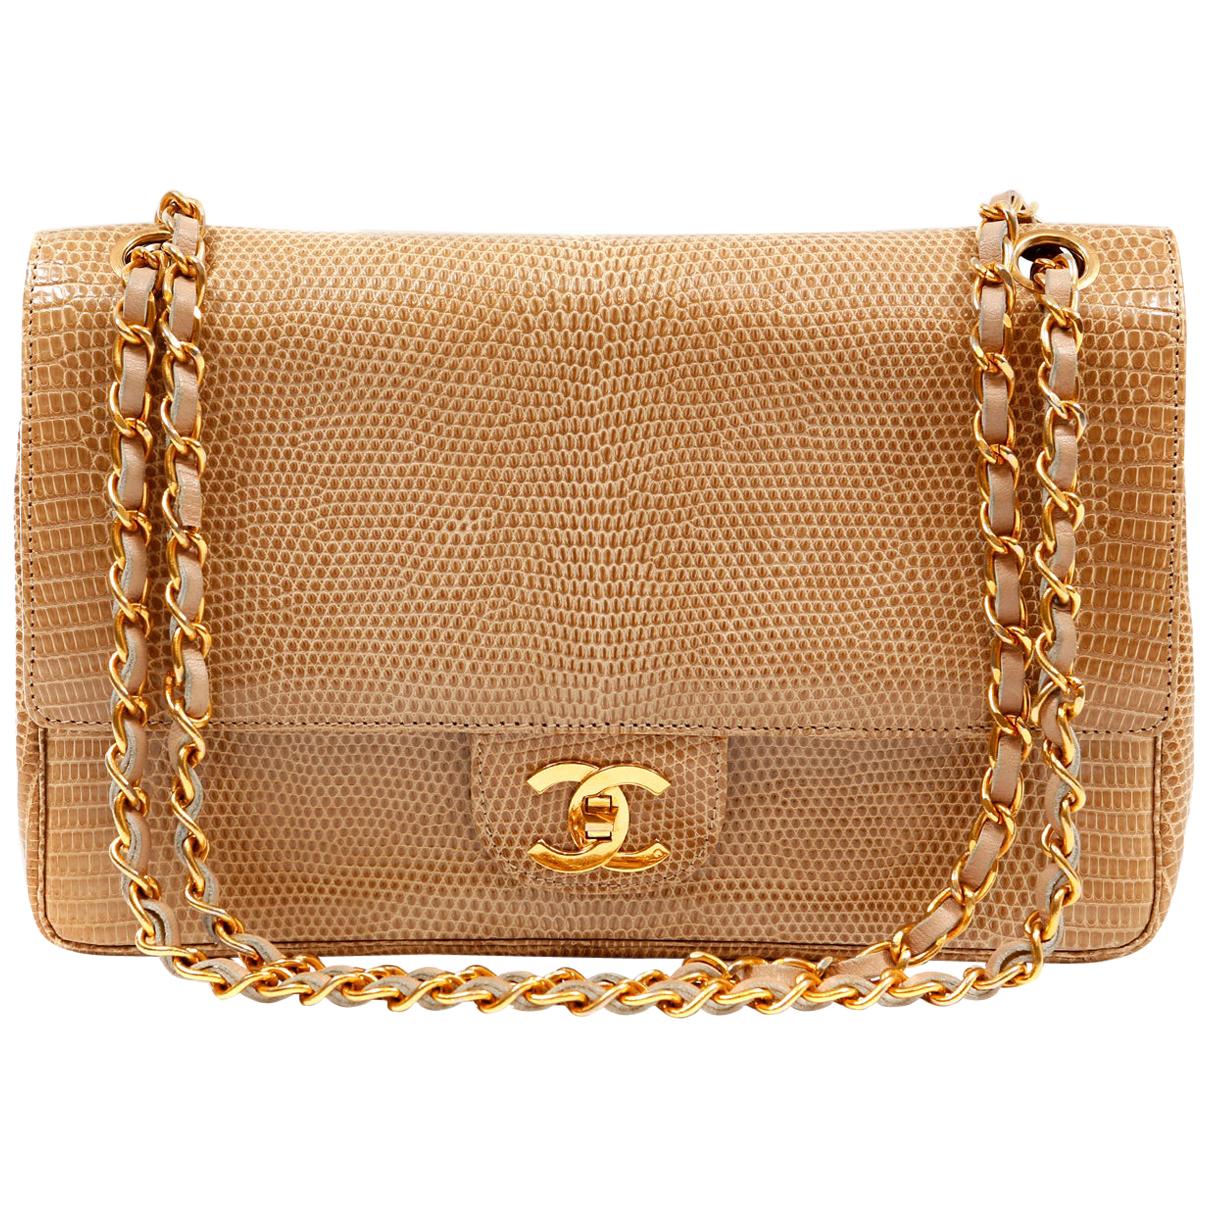 Chanel Beige Lizard Medium Classic Double Flap Vintage Bag